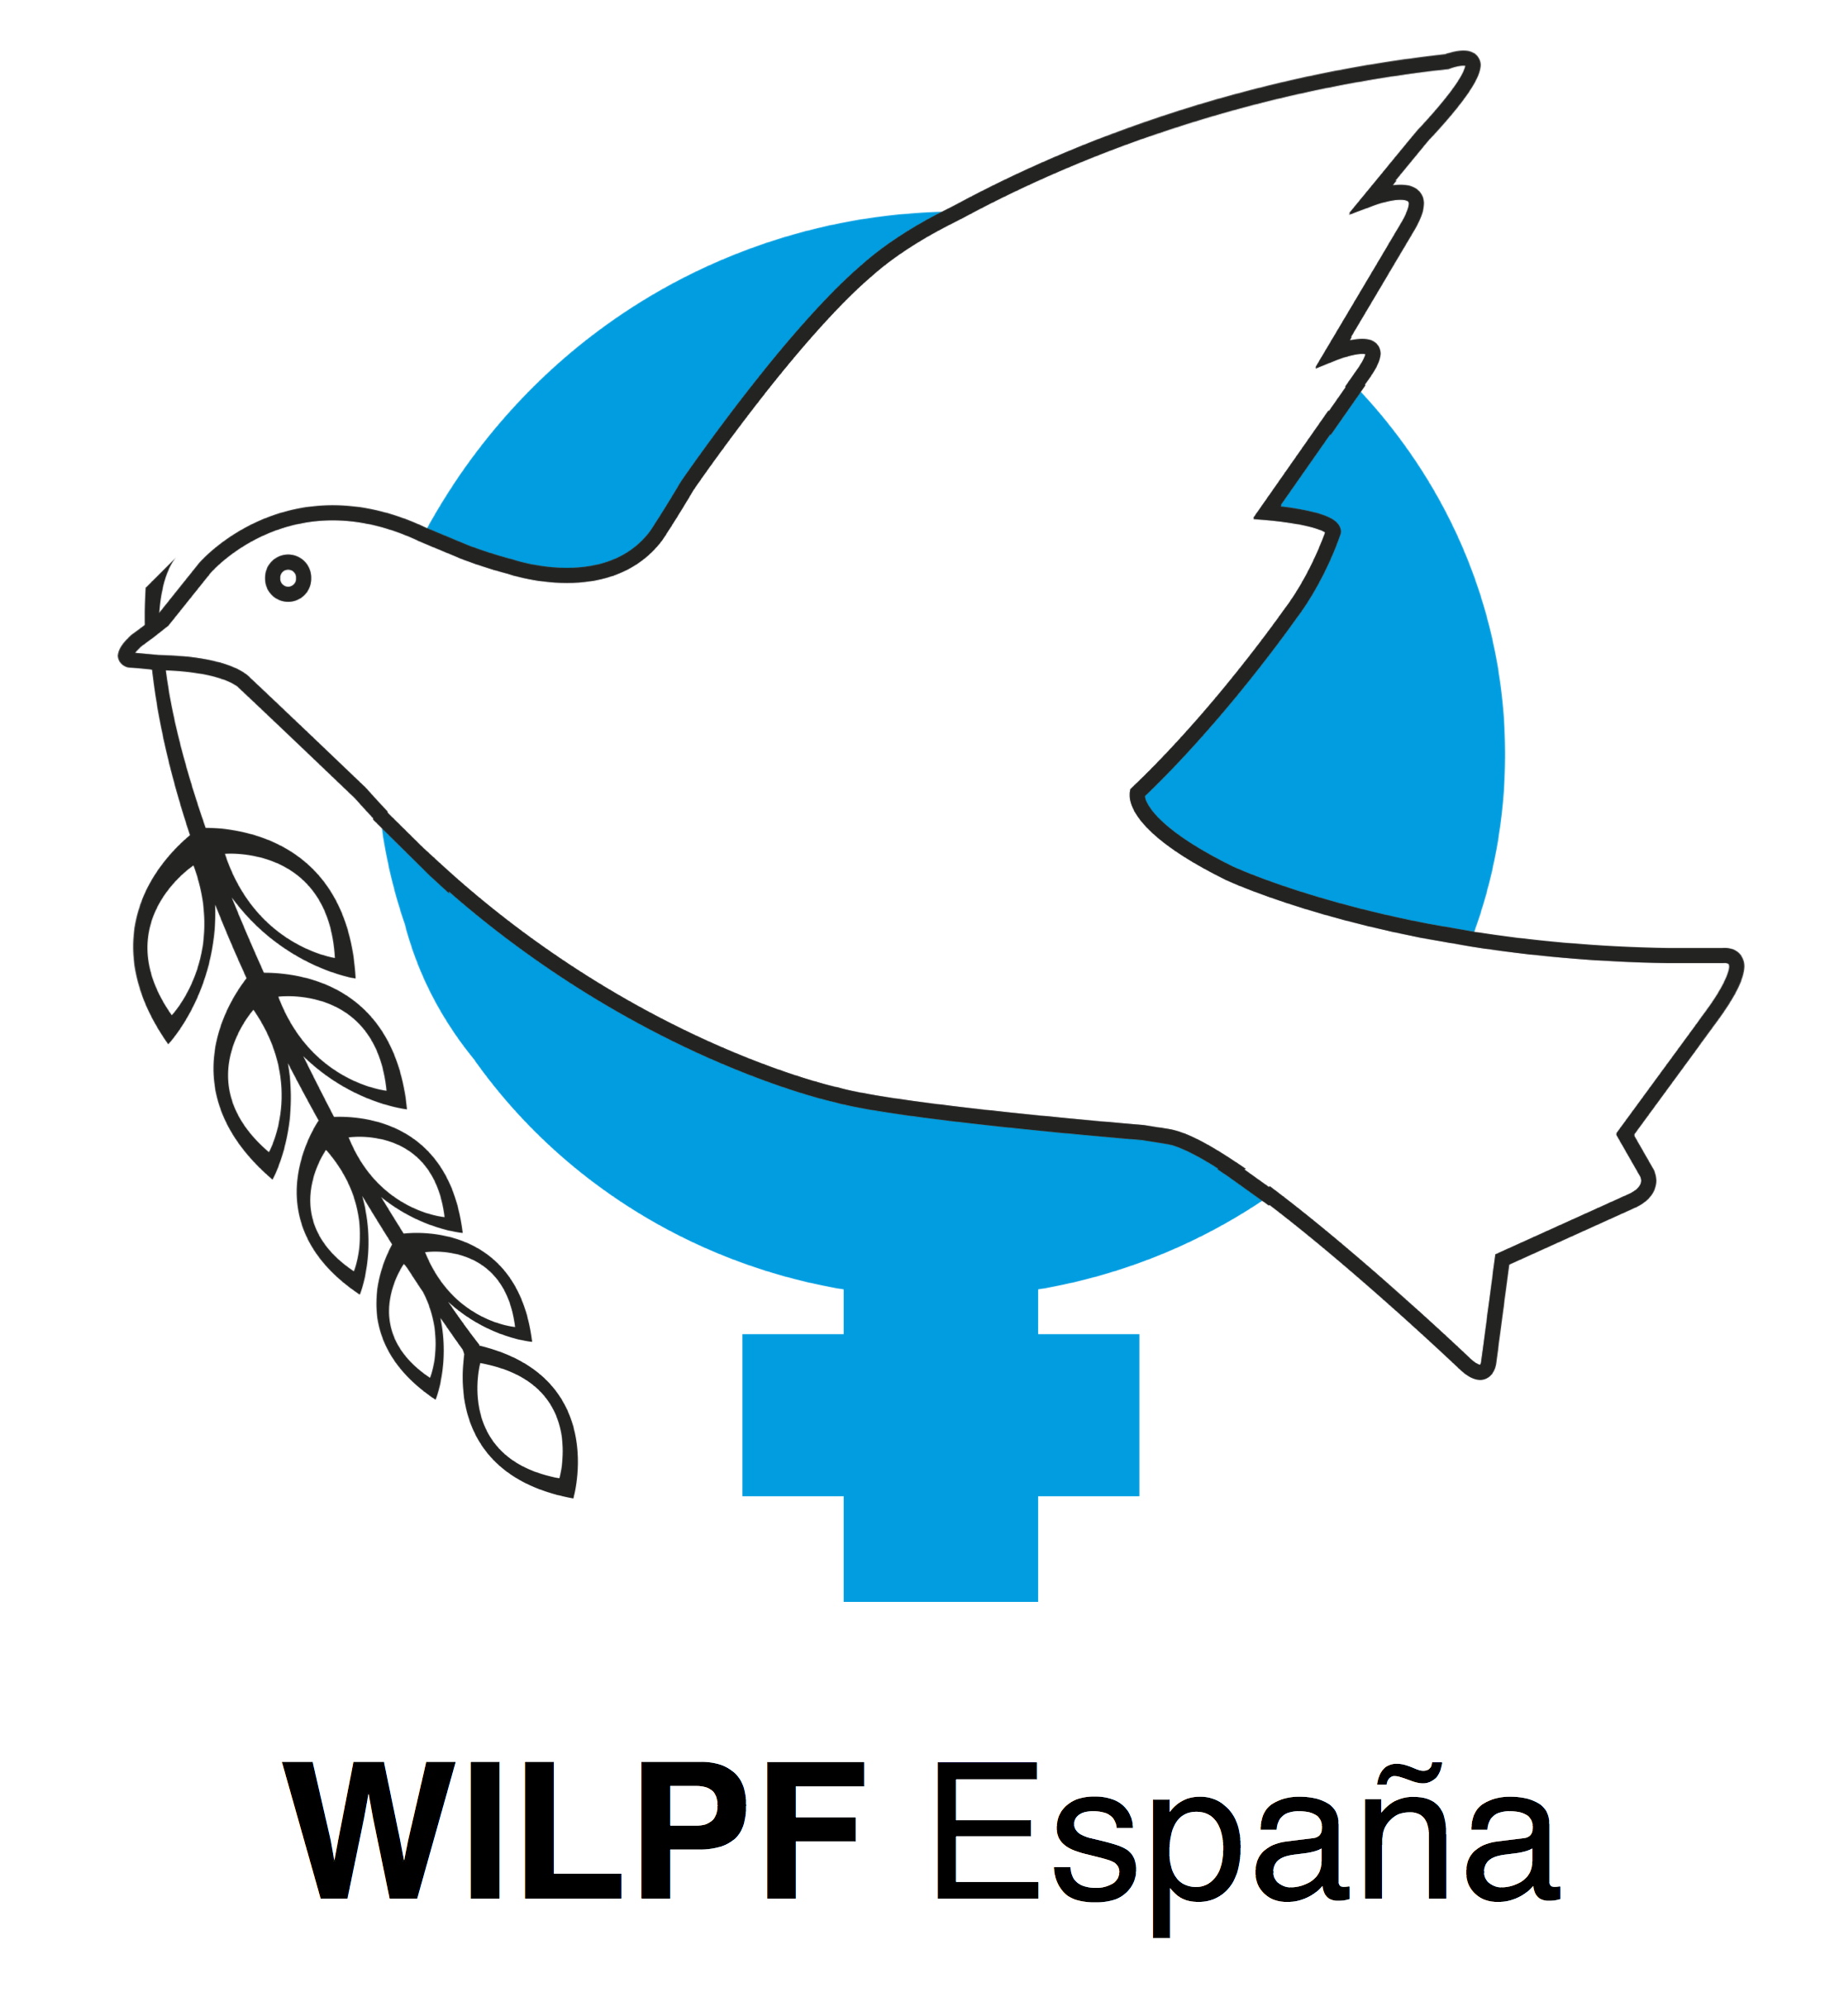 WILPF España